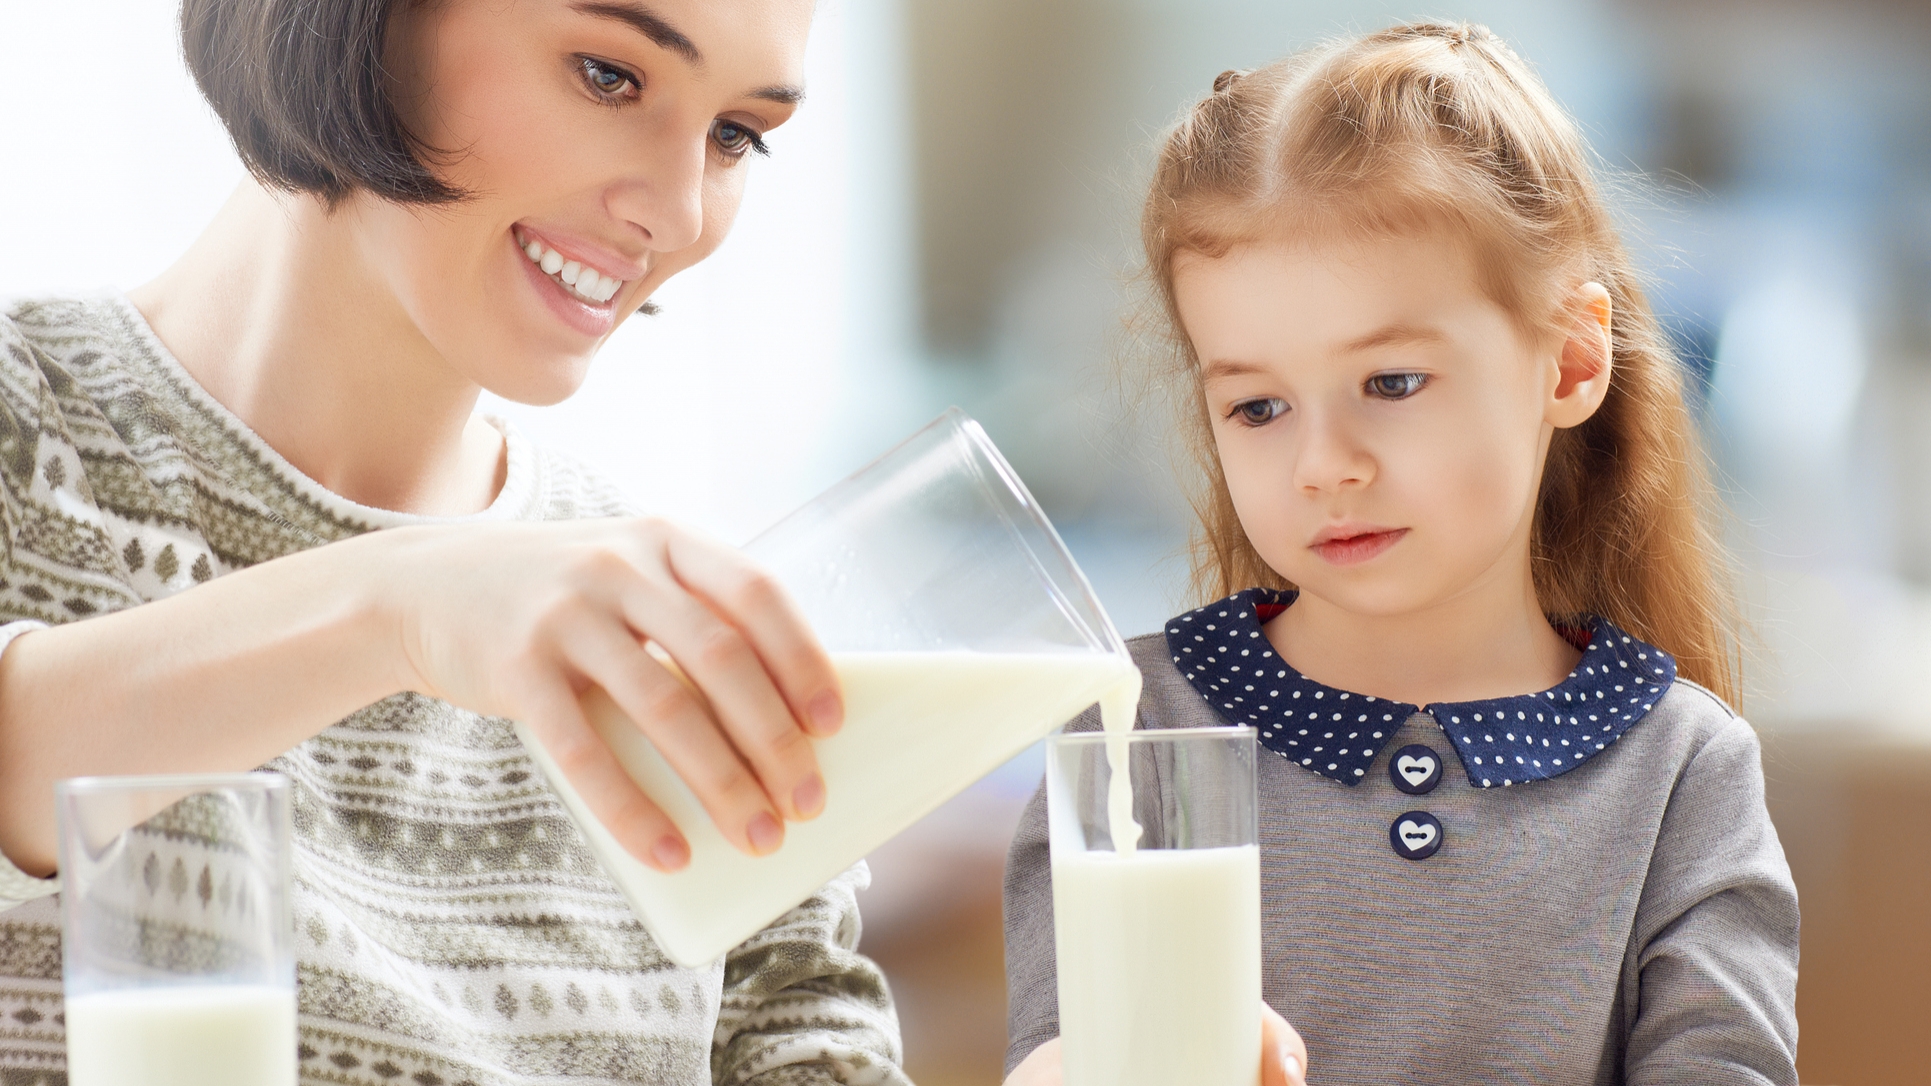 Мама заставляет принимать 10. Молоко для детей. Семья пьет молоко. Мама наливает ребенку молоко.